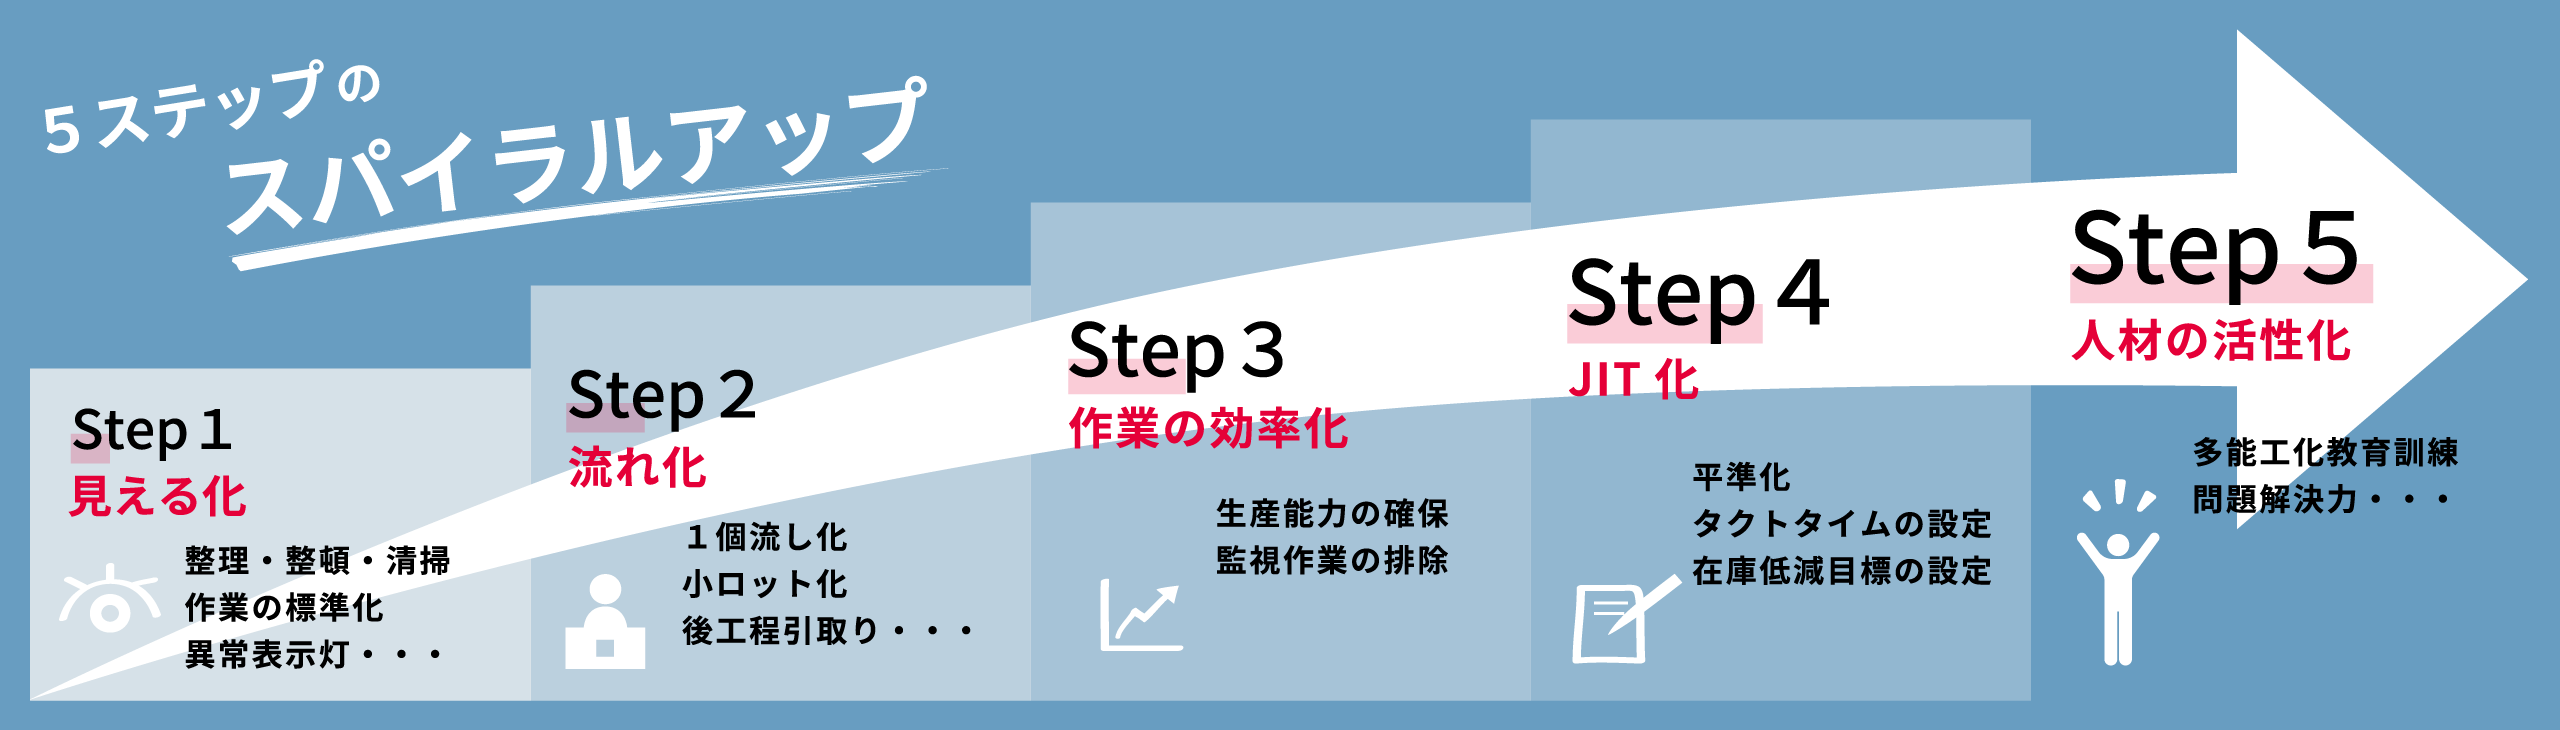 5ステップのスパイラルアップ Step1：見える化（整理・整頓・清掃/作業の標準化/異常表示灯…）、Step2：流れ化（1個流し化/小ロット化/後工程引取り…）、Step3：作業の効率化（生産能力の確保/監視作業の排除）、Step4：JIT化（平準化/タクトタイムの設定/在庫低減目標の設定）、Step5：人材の活性化（多能工化教育訓練/問題解決力…）